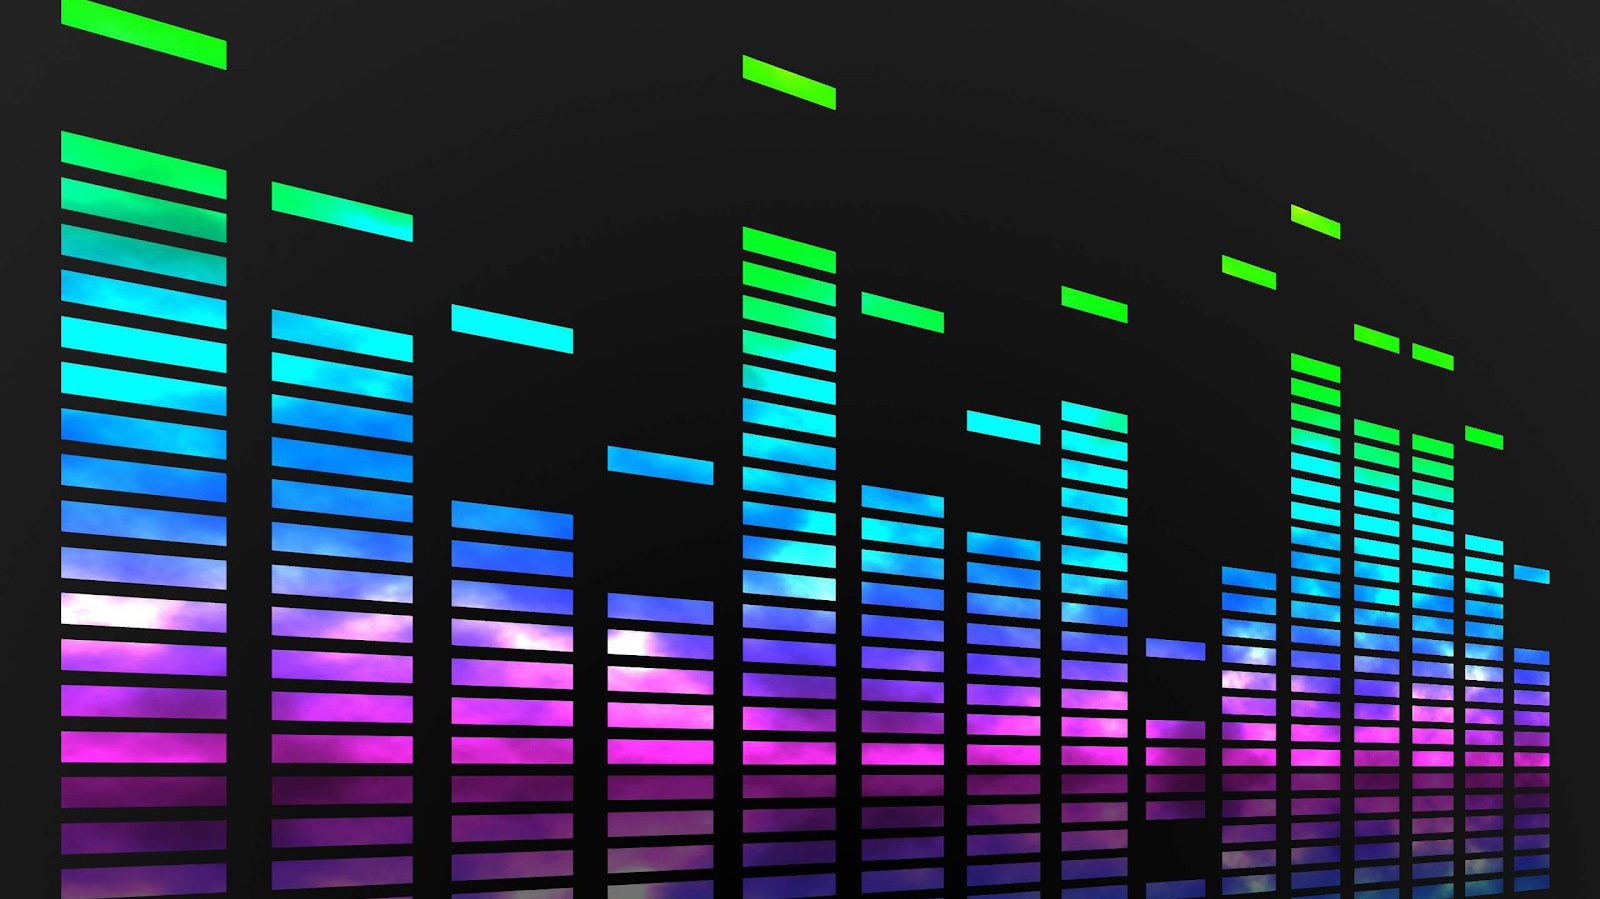 Phần mềm nghe nhạc: Bạn là một người yêu âm nhạc và đang tìm kiếm một phần mềm nghe nhạc đầy đủ chức năng, hỗ trợ nhiều định dạng và tiện ích? Hãy cùng khám phá các phần mềm nghe nhạc hàng đầu tại chúng tôi, mang đến cho bạn những trải nghiệm âm nhạc tuyệt vời nhất!